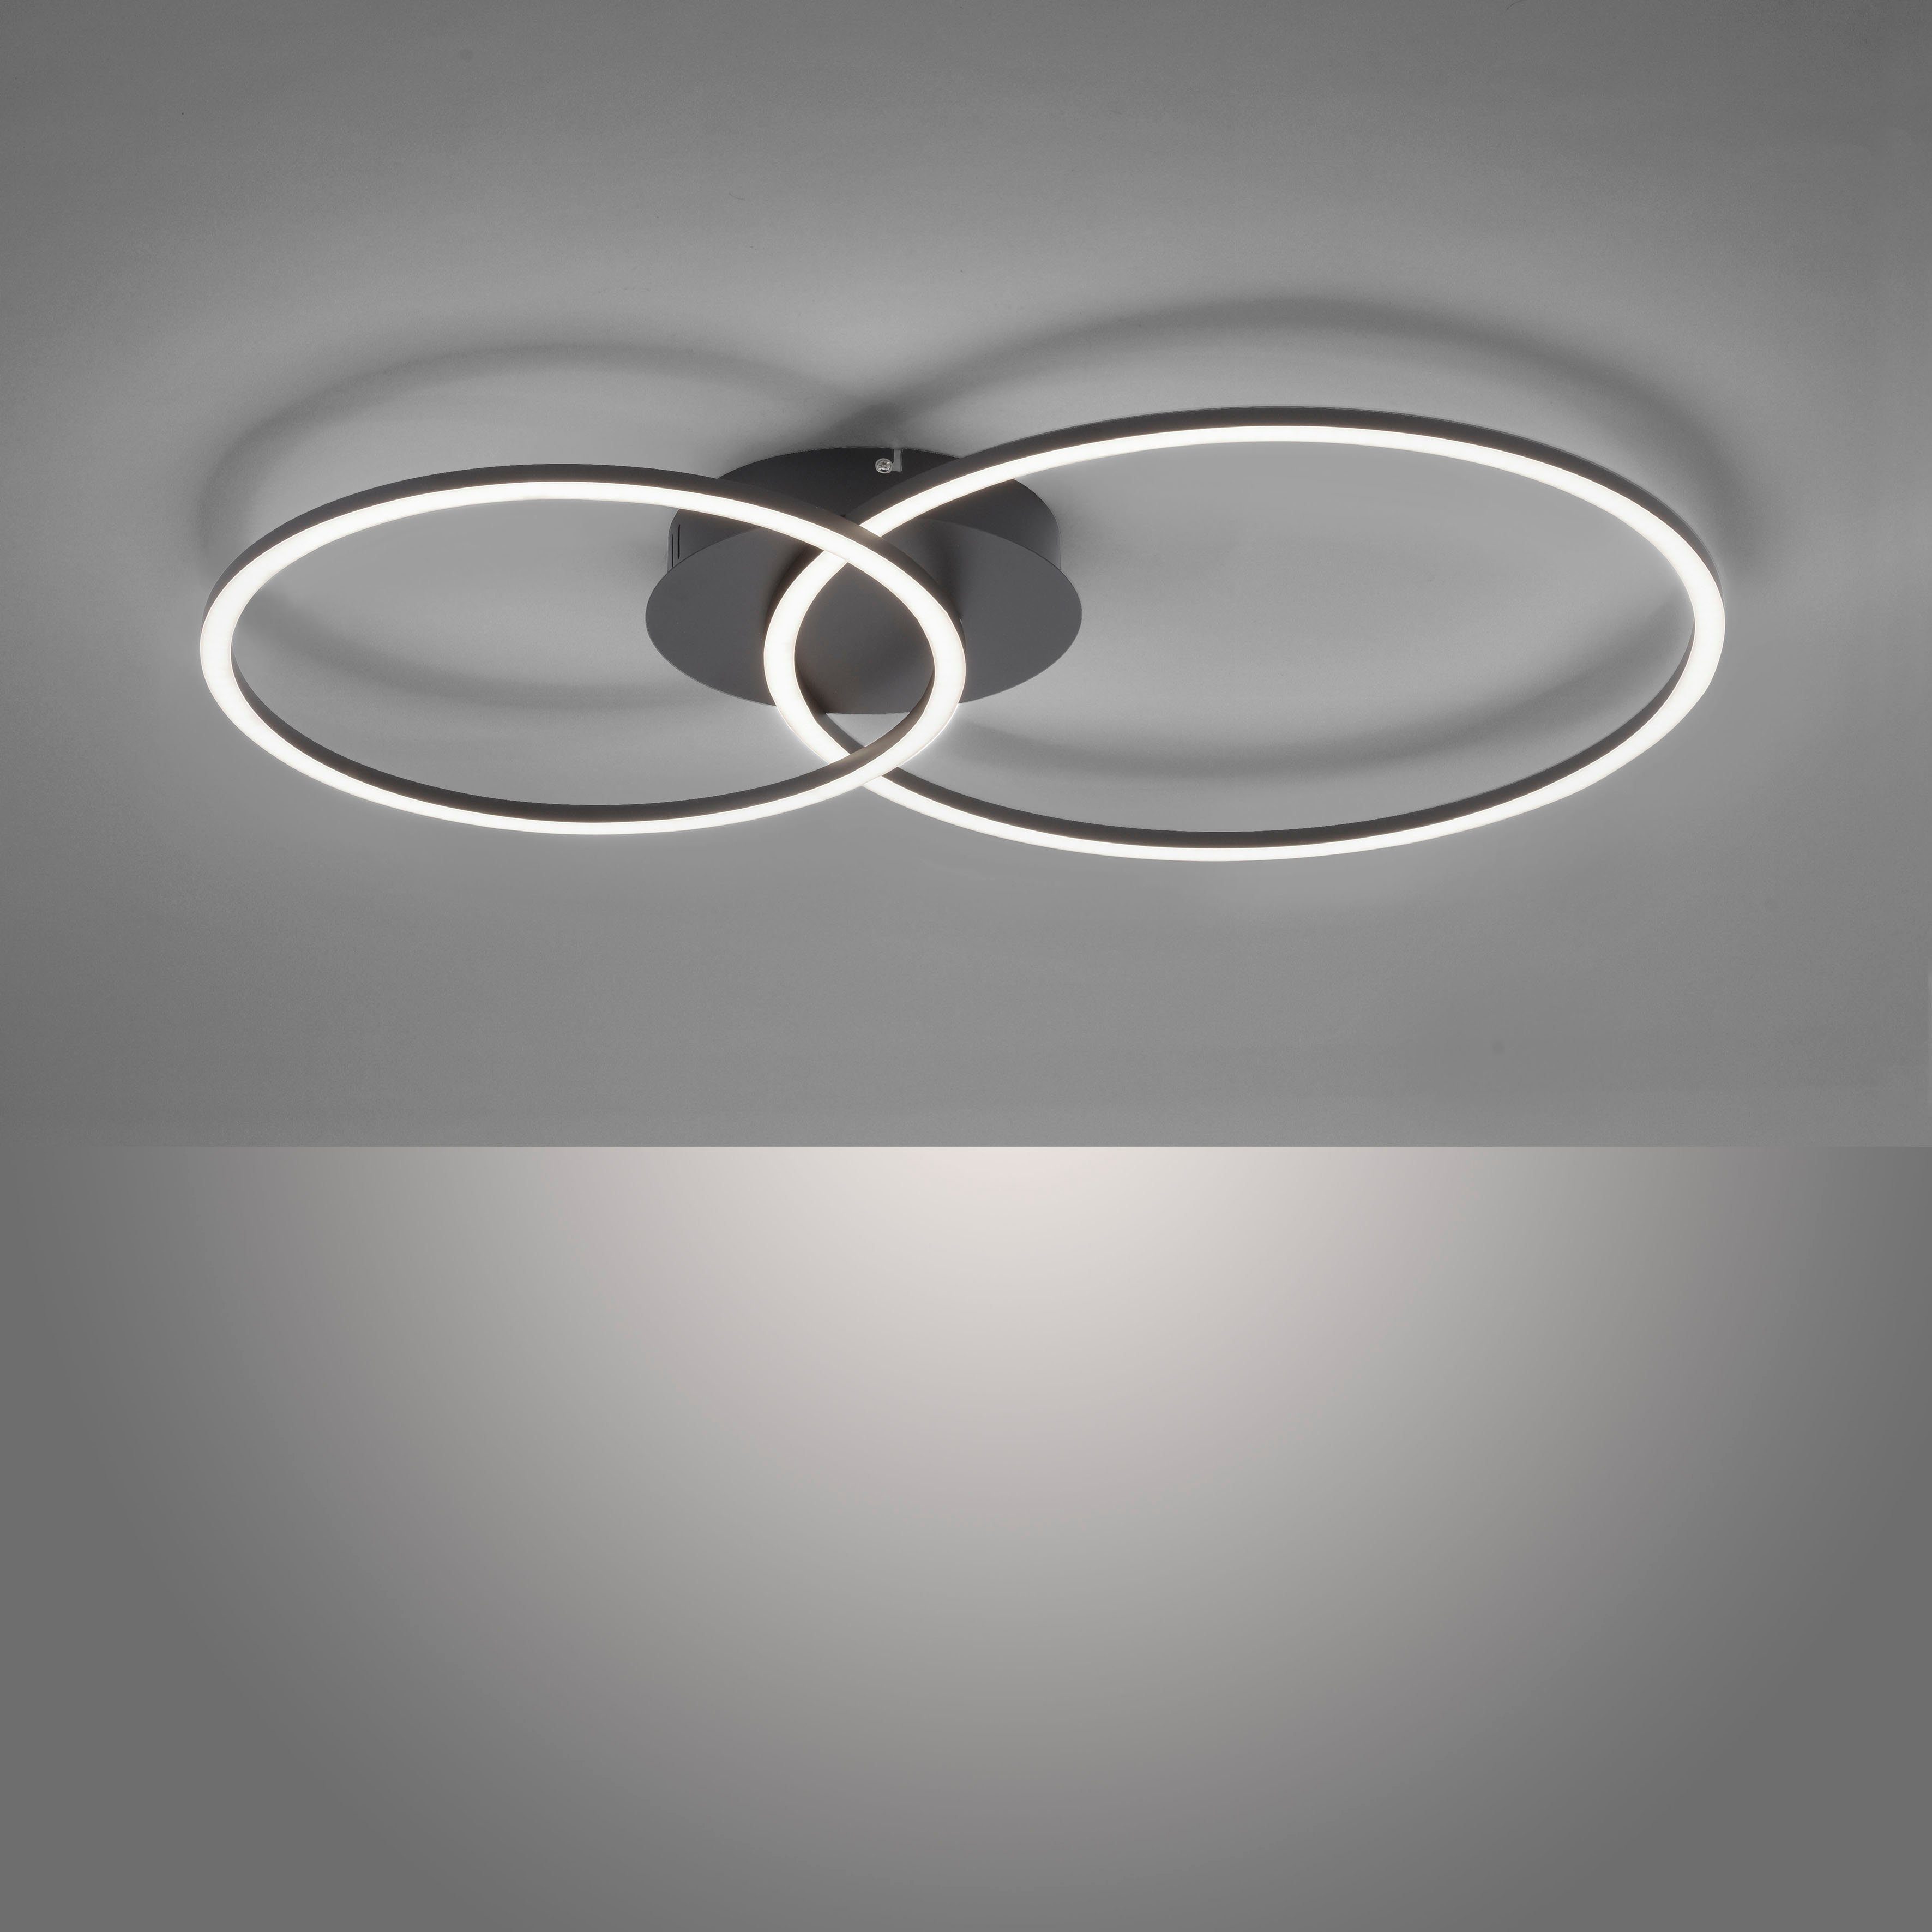 Leuchten IVANKA, LED dimmbar stufenlos Deckenleuchte Ring über Wandschalter, ein den Direkt LED Memoryfunktion, schwenkbar mehrere Helligkeitsstufen, ist Dimmfunktion, wechselbar,